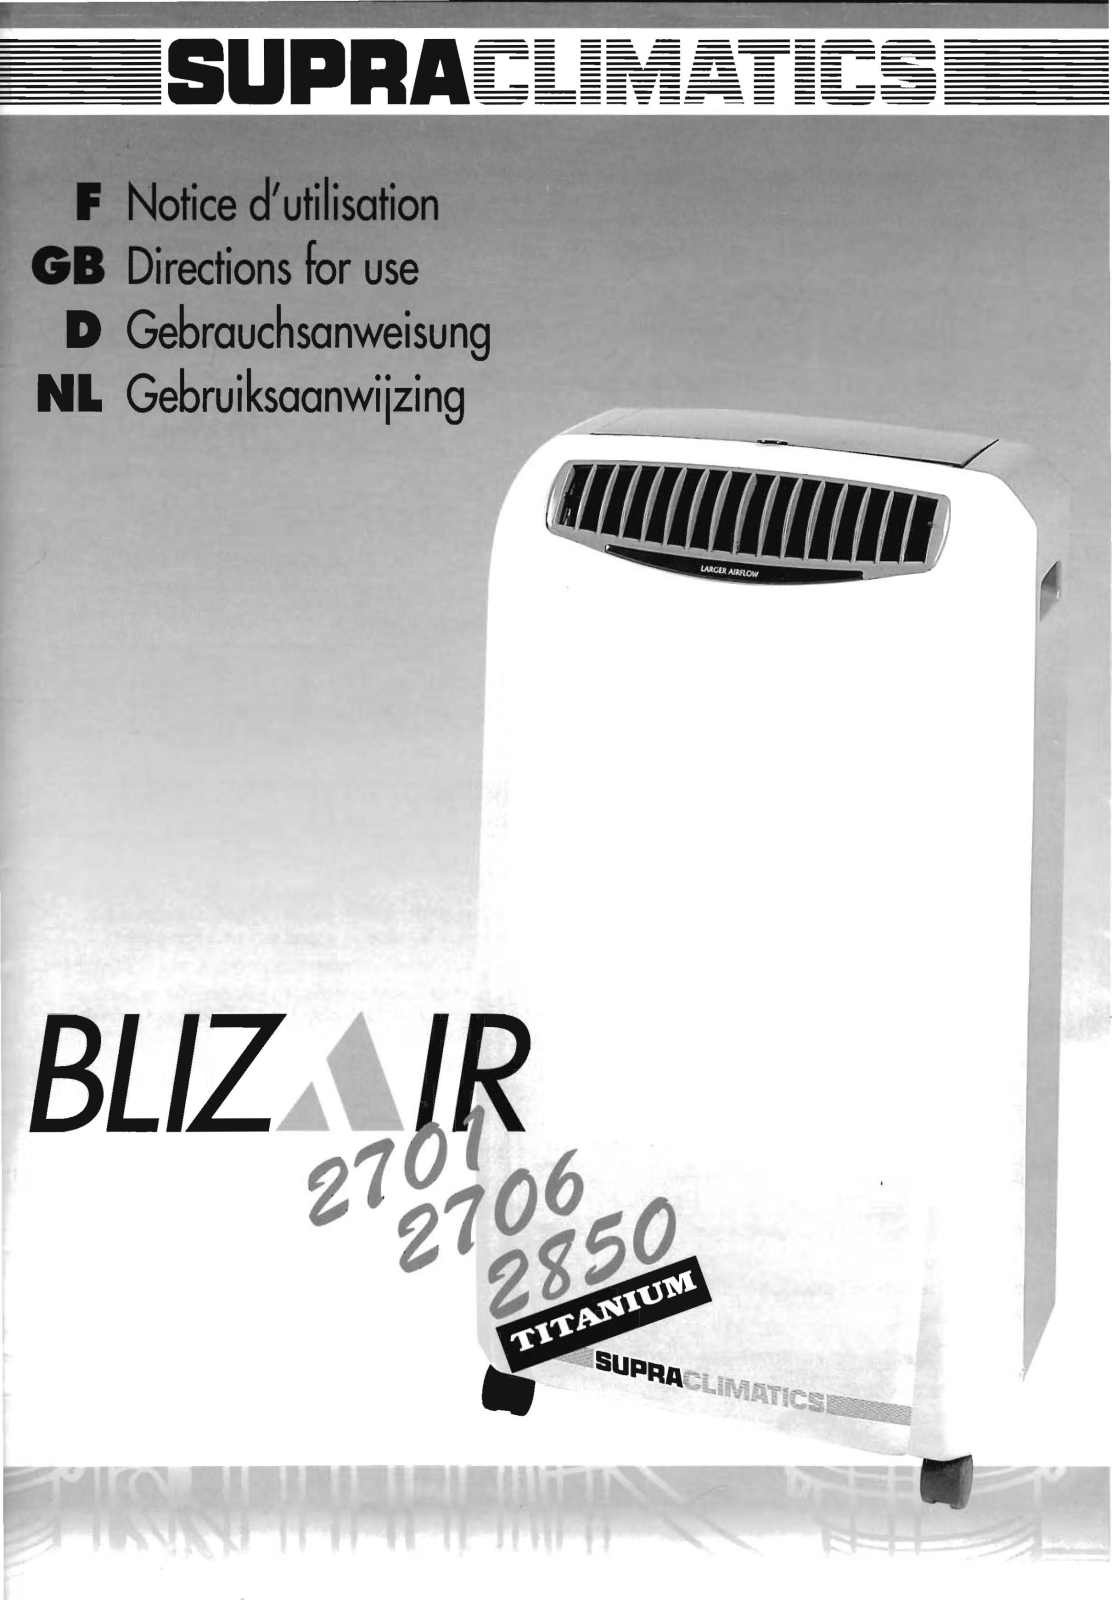 SUPRA Blizair 2850 User Manual